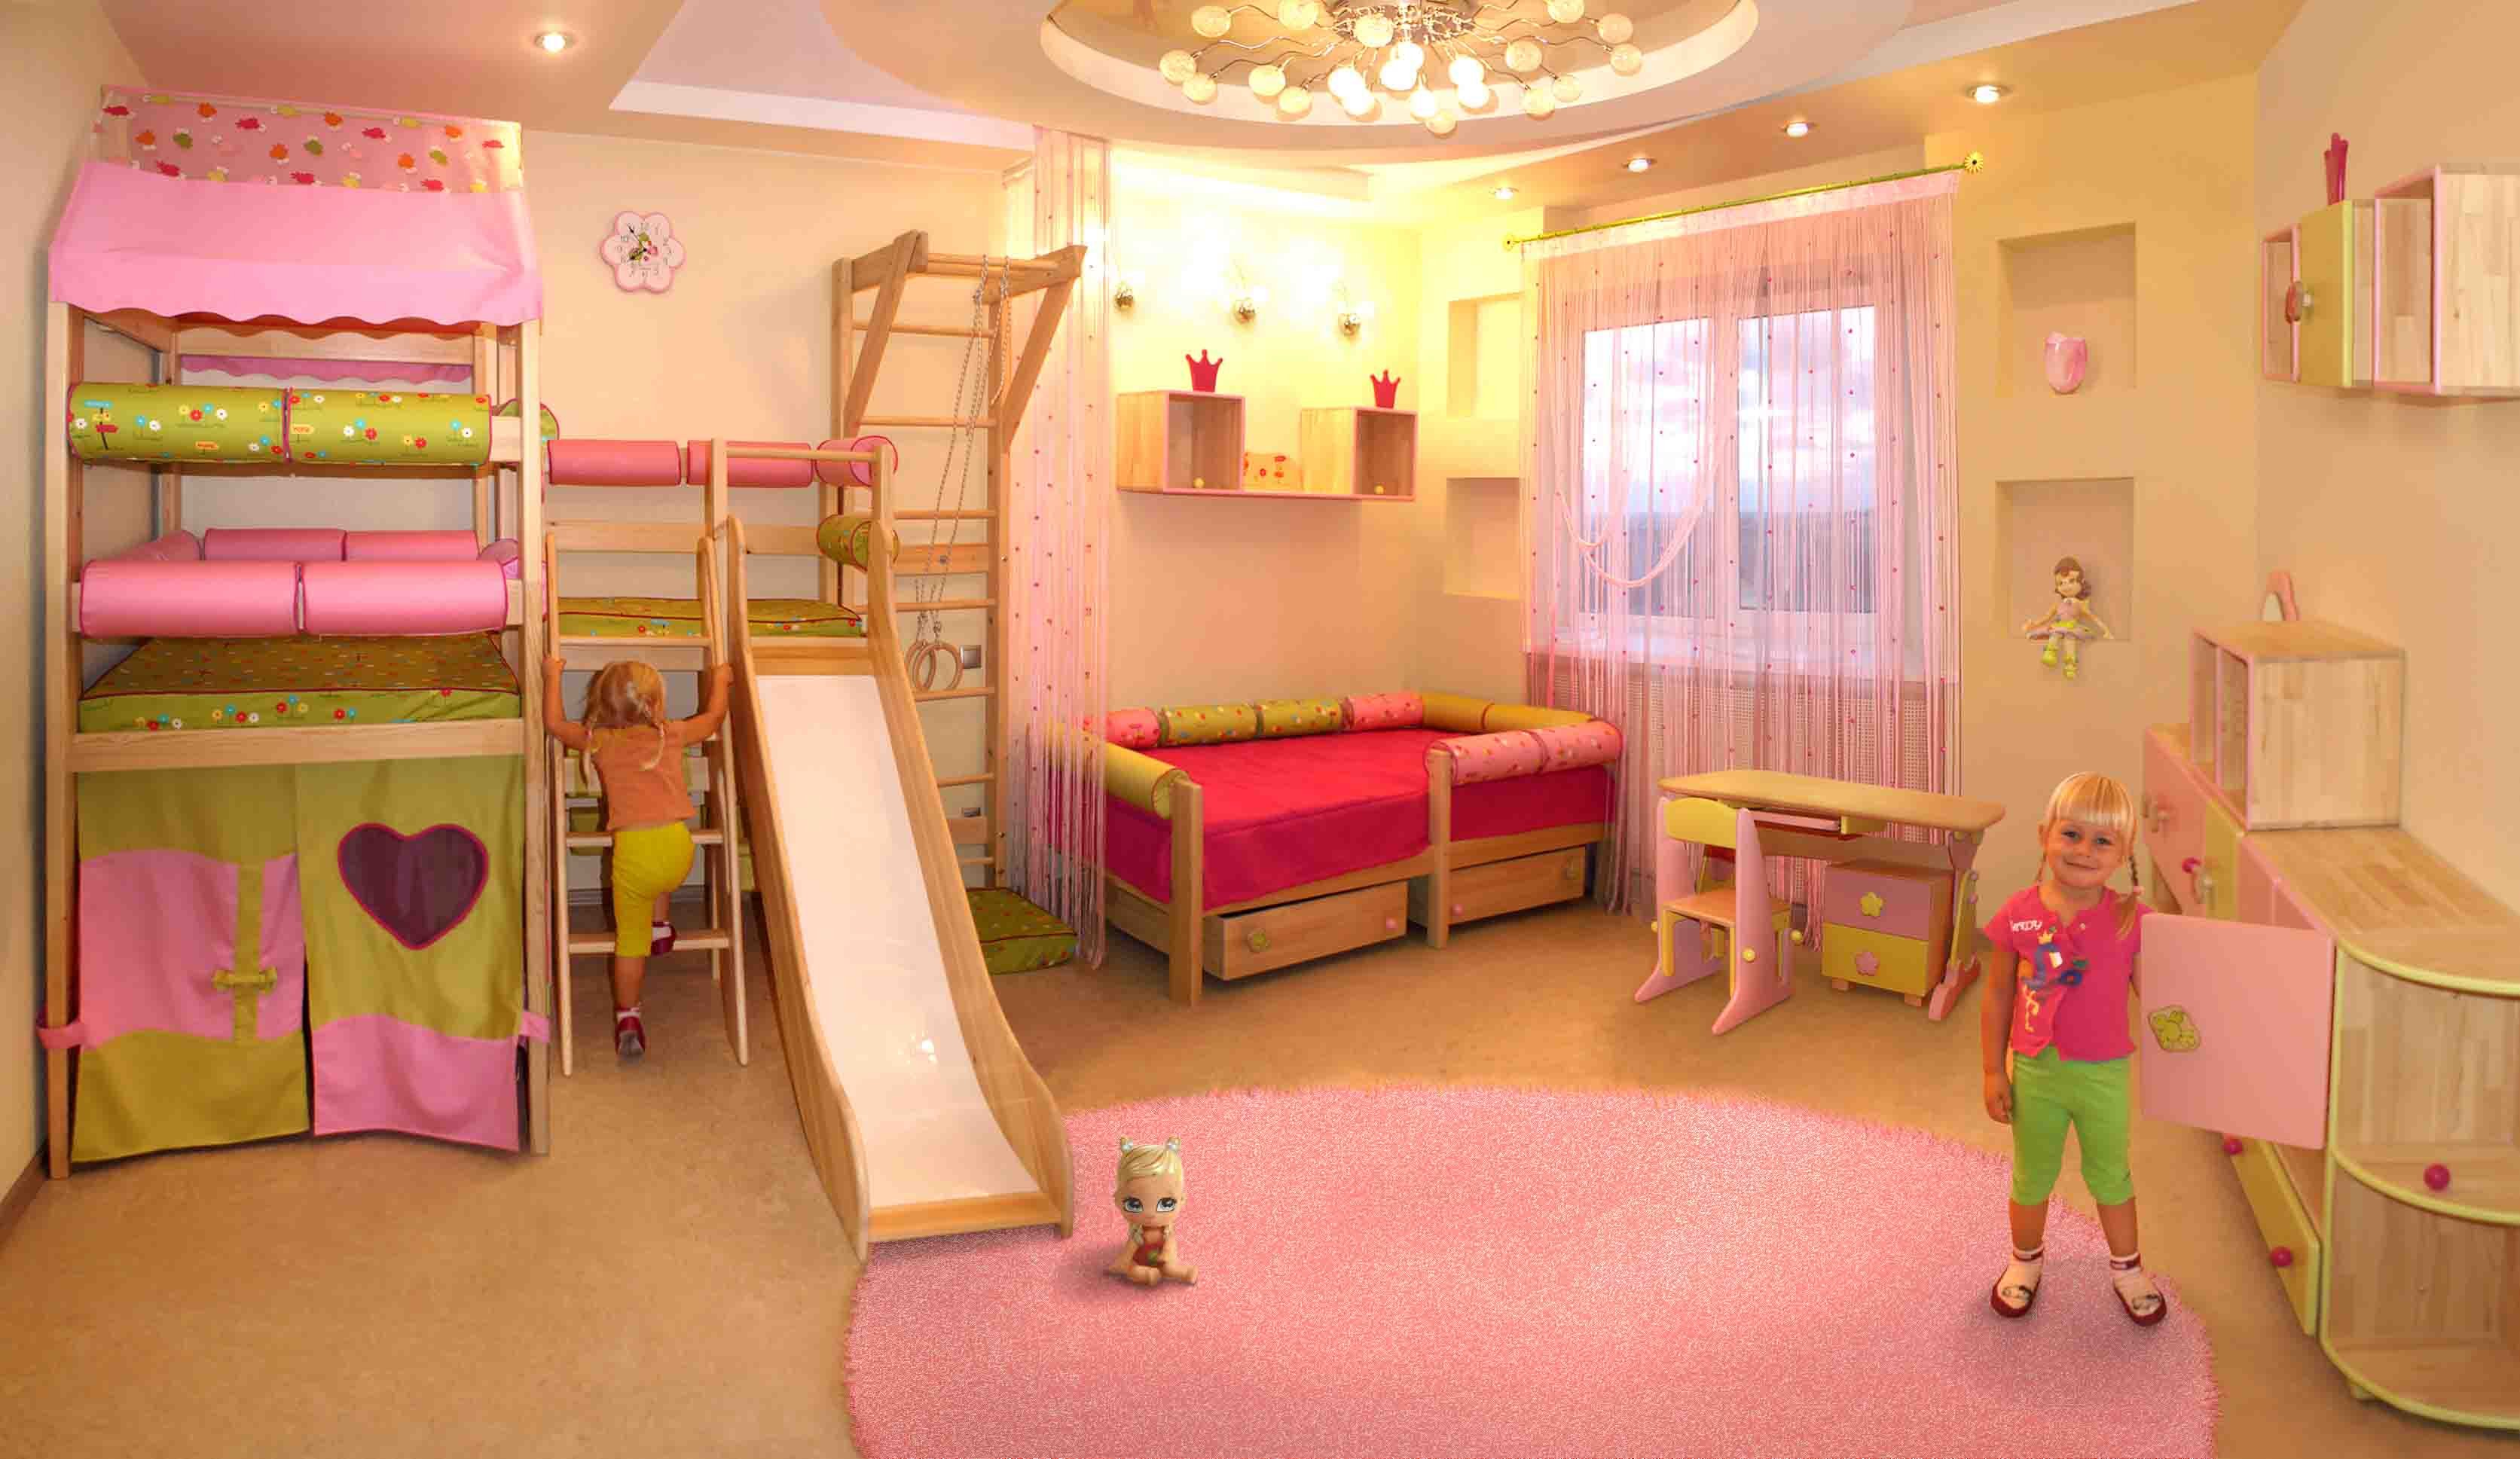 Где можно найти комнаты. Комната для девочки 3 года. Детская комната для девочки 6 лет. Комната для девочки 2 года. Детская комната для девочки 3 года.